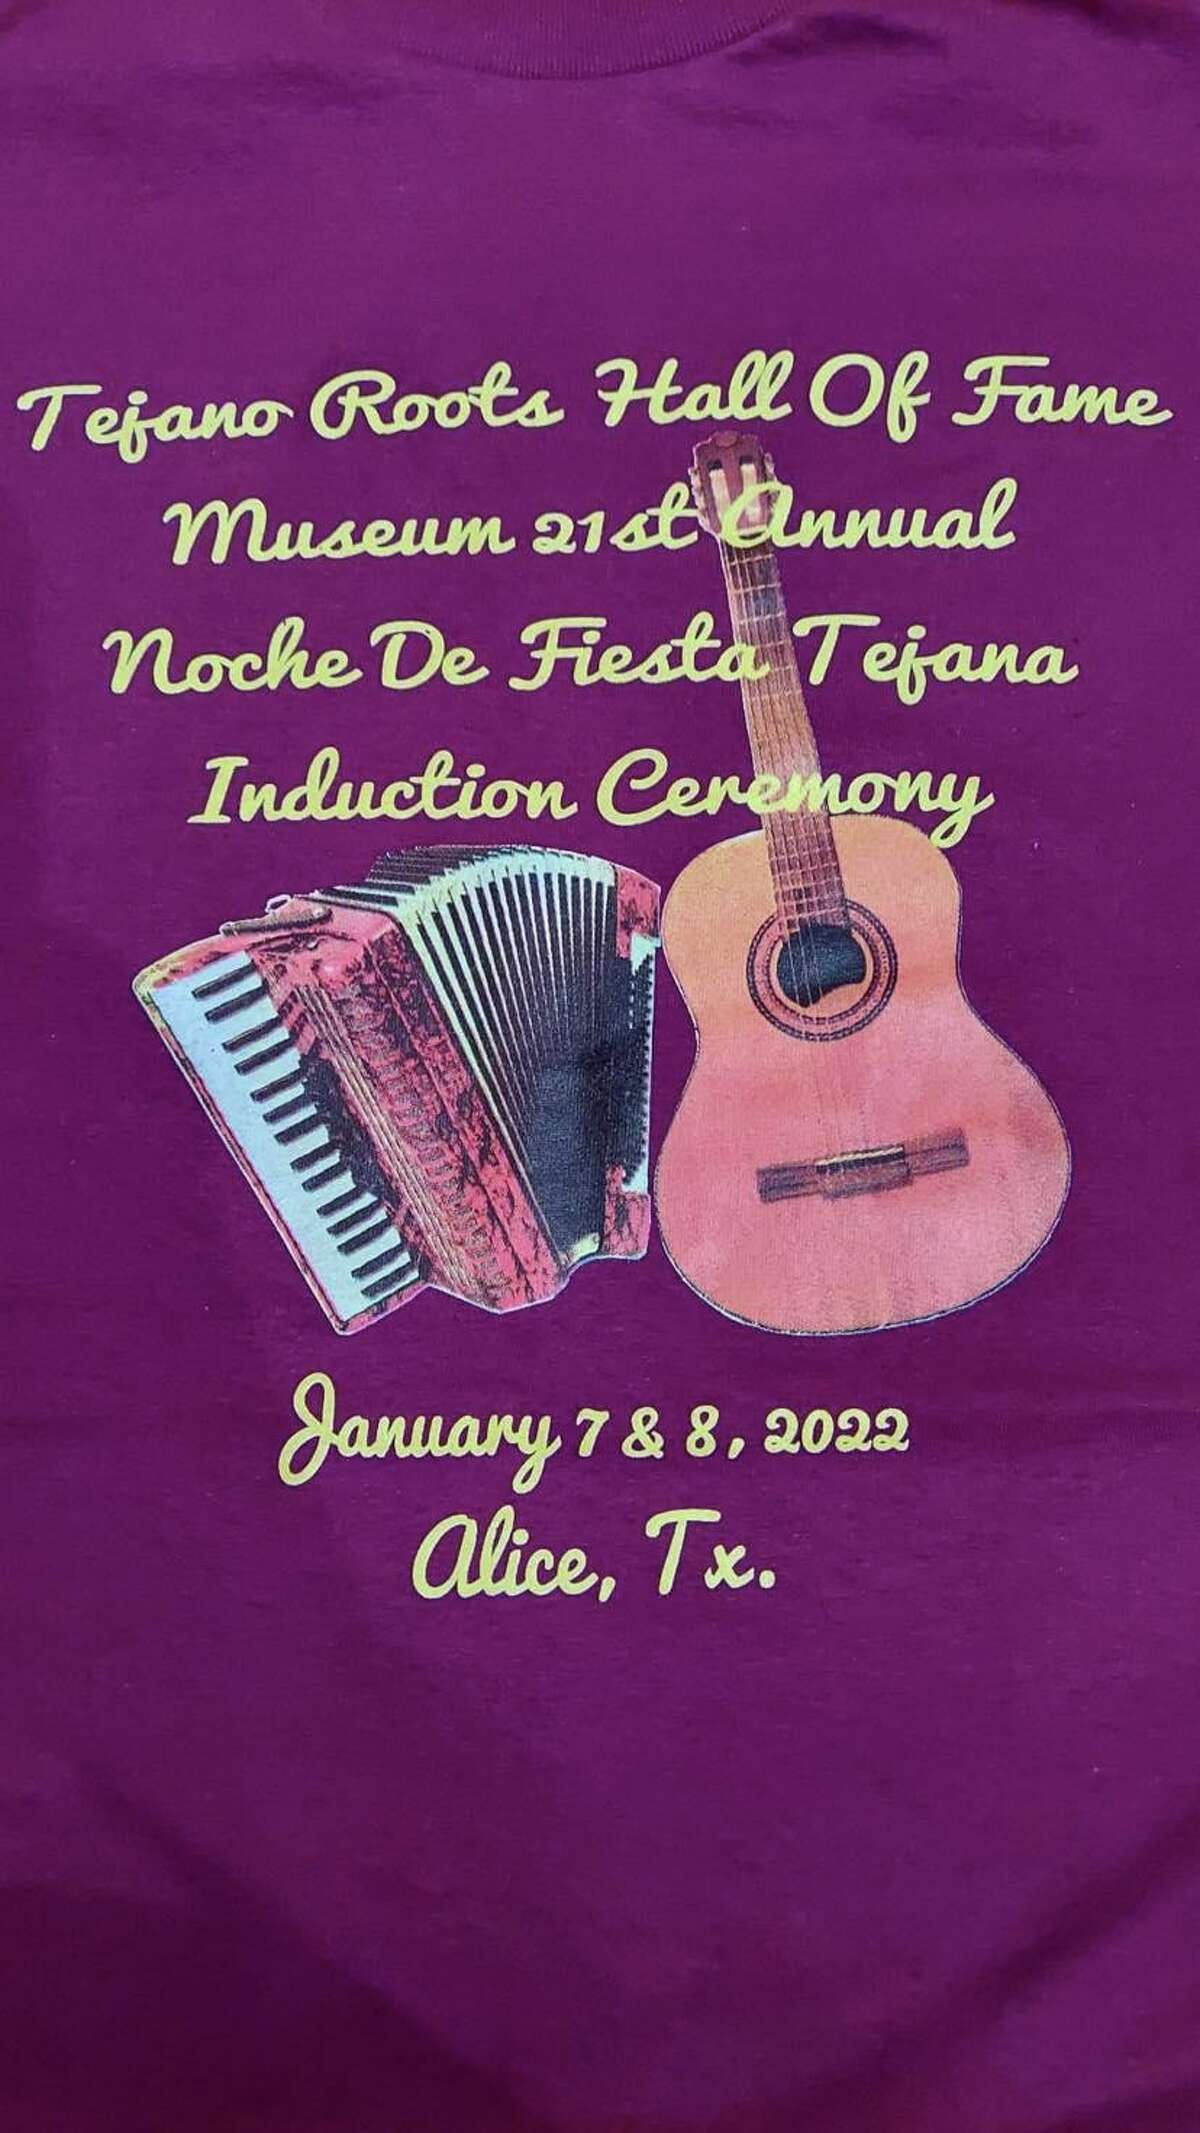 Invitación a la ceremonia de inducción de Tejano R.O.O.T.S. Hall of Fame and Music en su edición 21, que se celebró en Alice, Texas, los días 7 y 8 de enero de 2022.